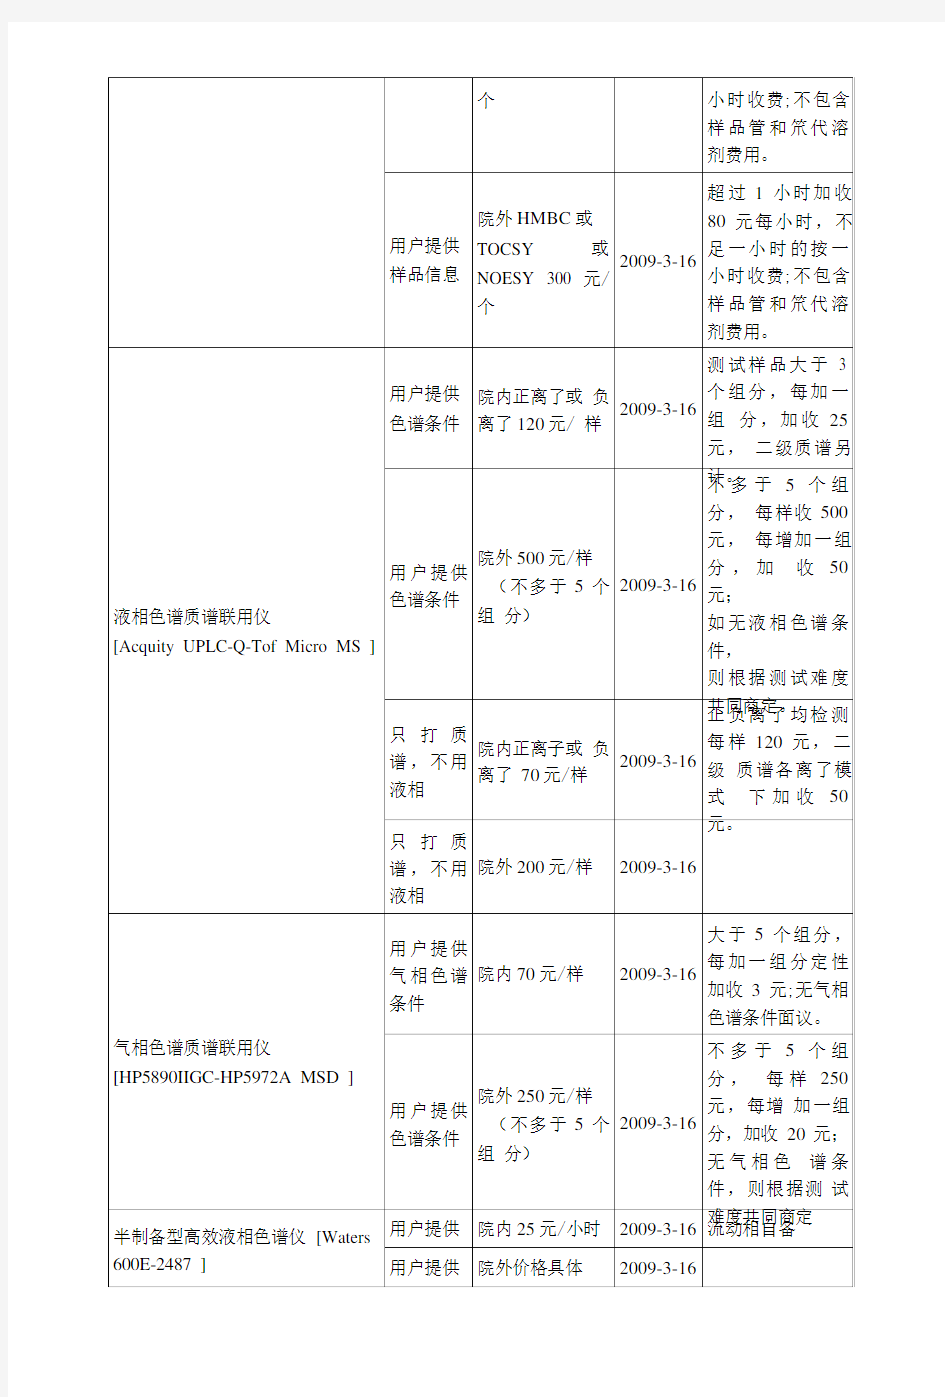 广东药学院中心实验室(分析测试中心)贵重仪器设备收费标准.doc